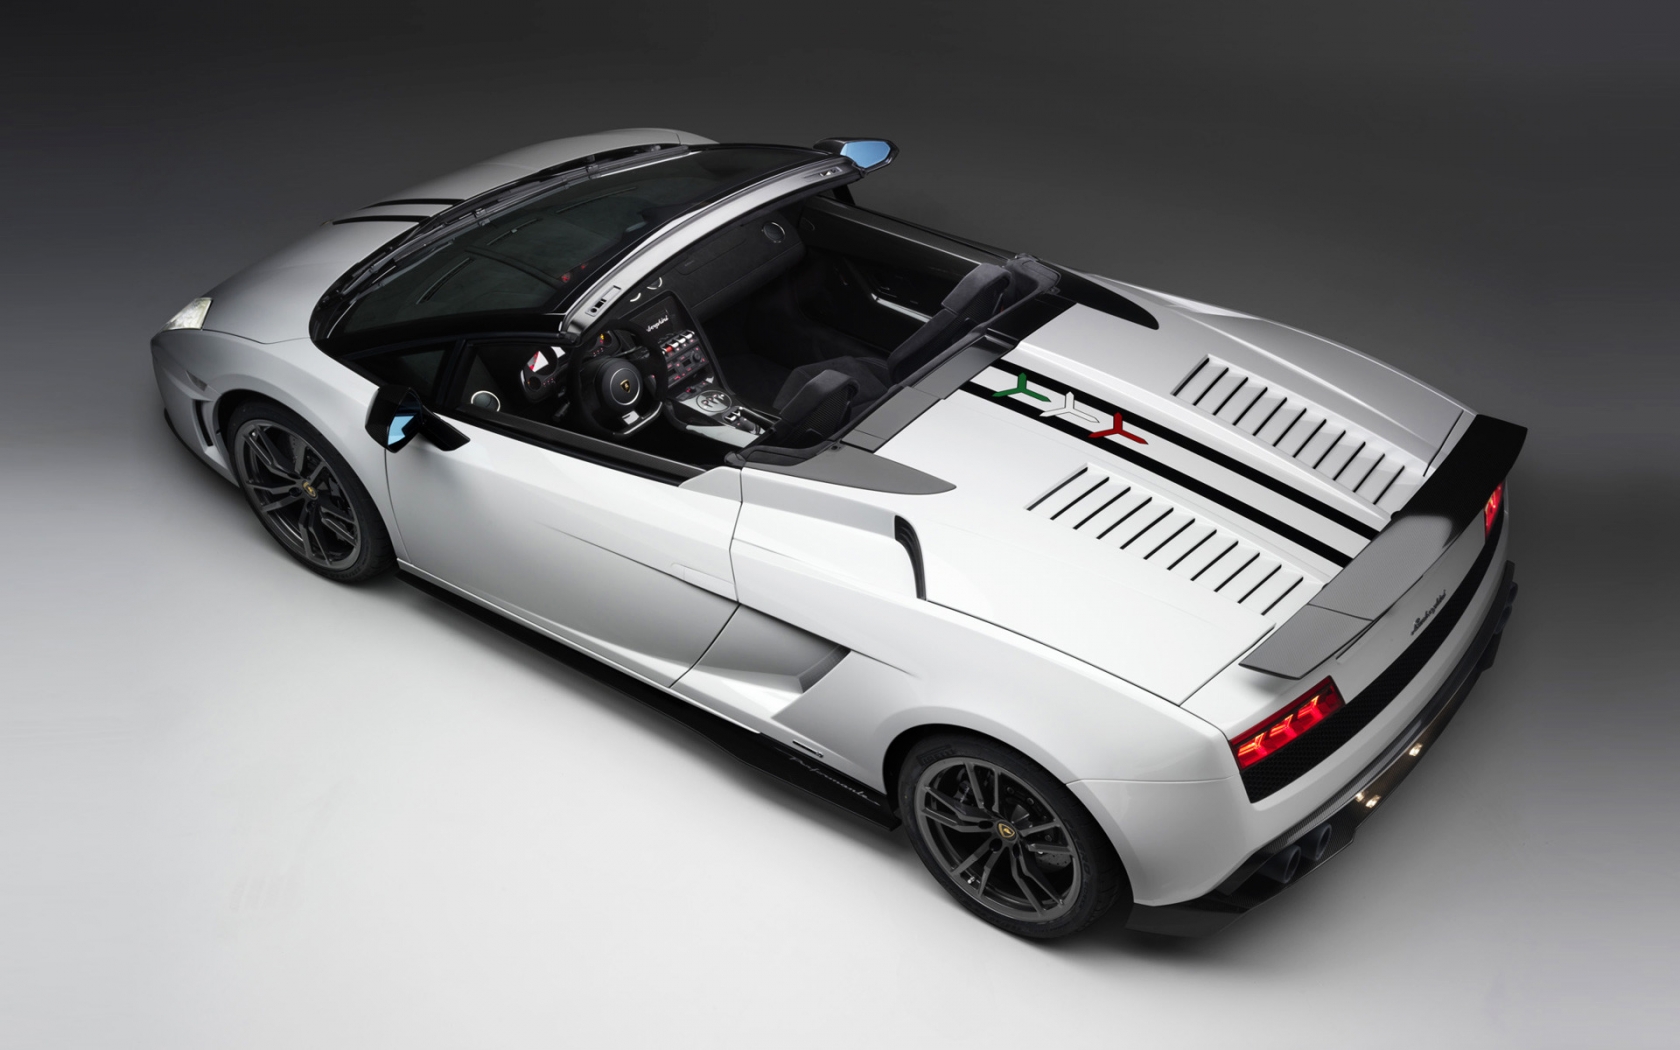 2011 Lamborghini Gallardo for 1680 x 1050 widescreen resolution